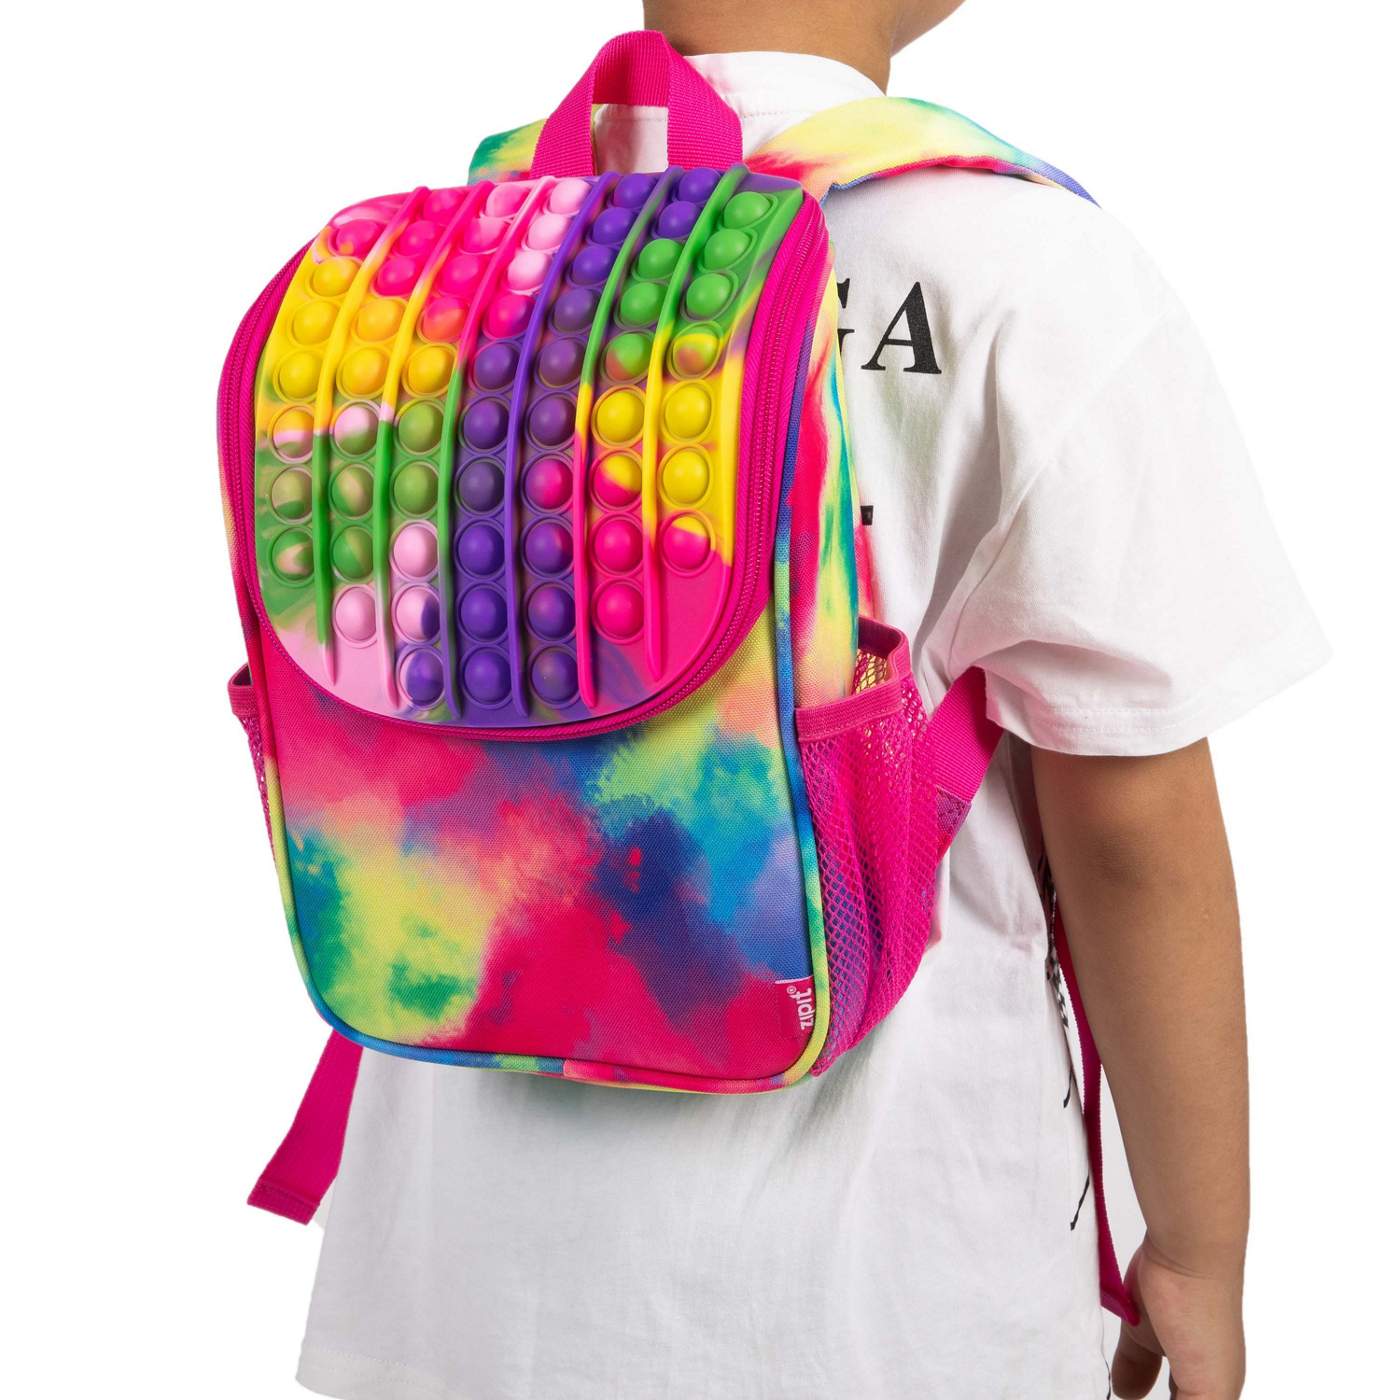 ZIPIT Zip n' Pop Mini Backpack - Tie Dye; image 2 of 5